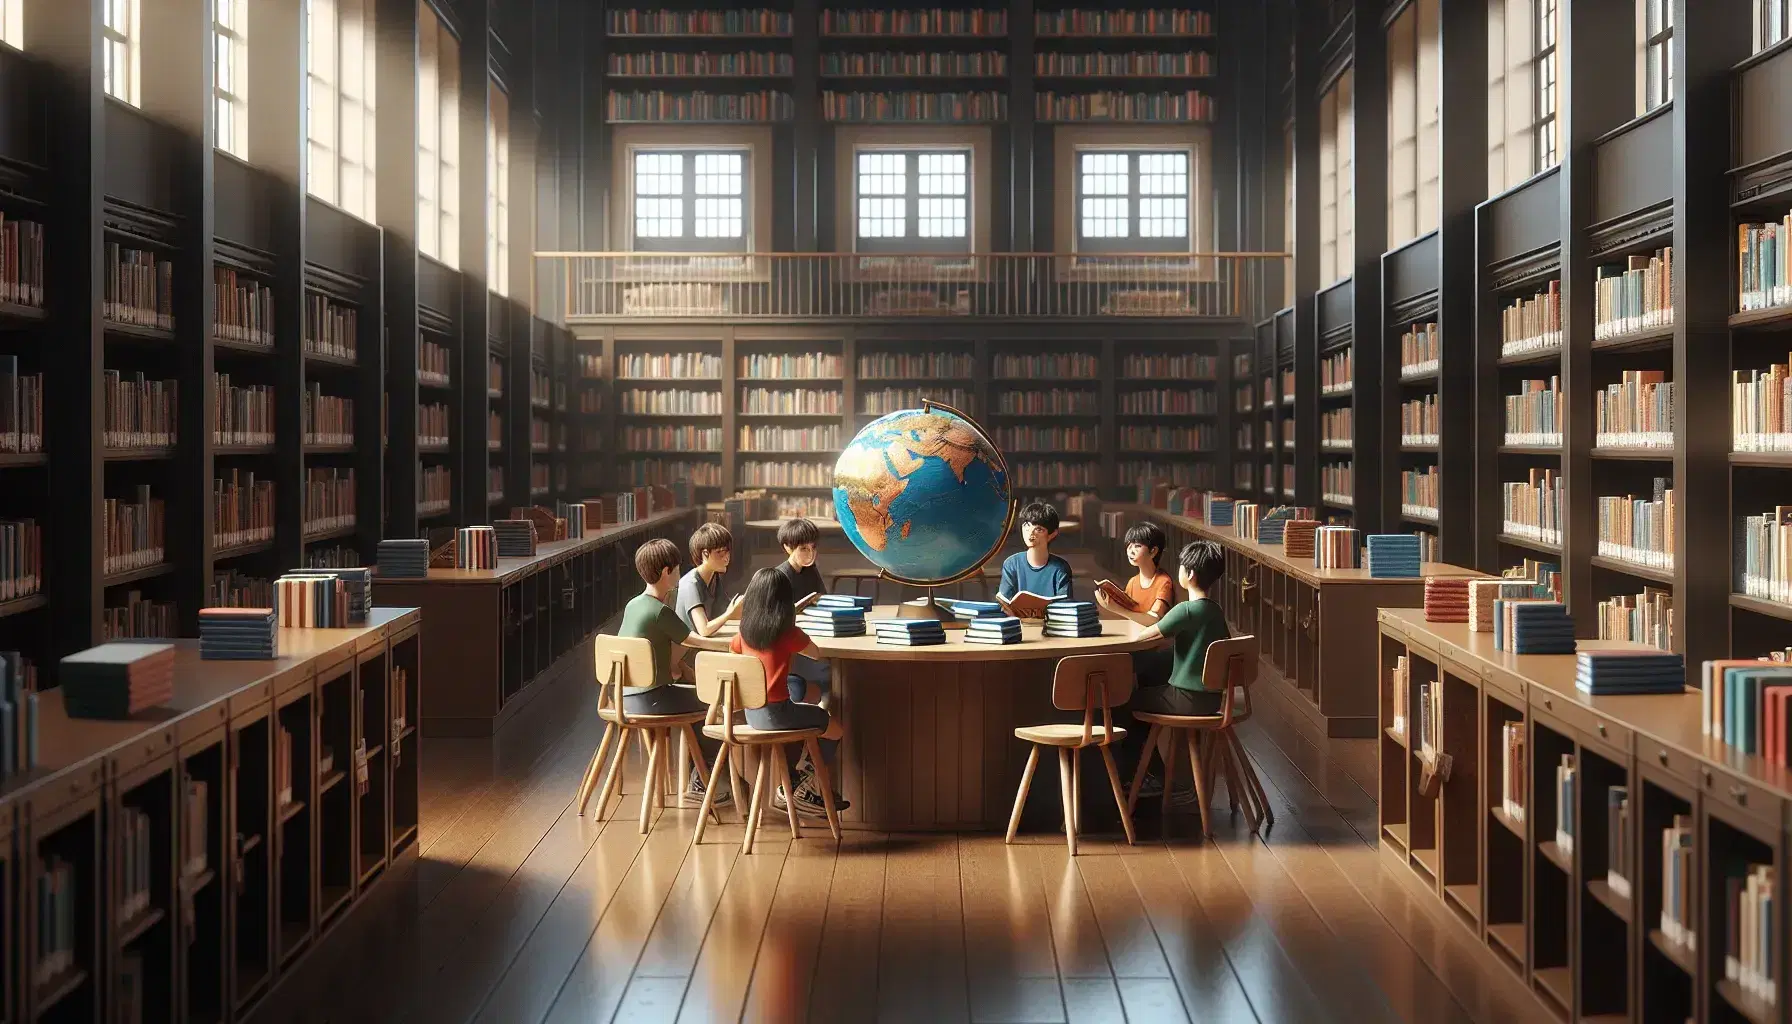 Biblioteca escolar iluminada con estantes de madera y libros variados, mesa con libros y globo terráqueo, y tres estudiantes concentrados en una discusión académica.